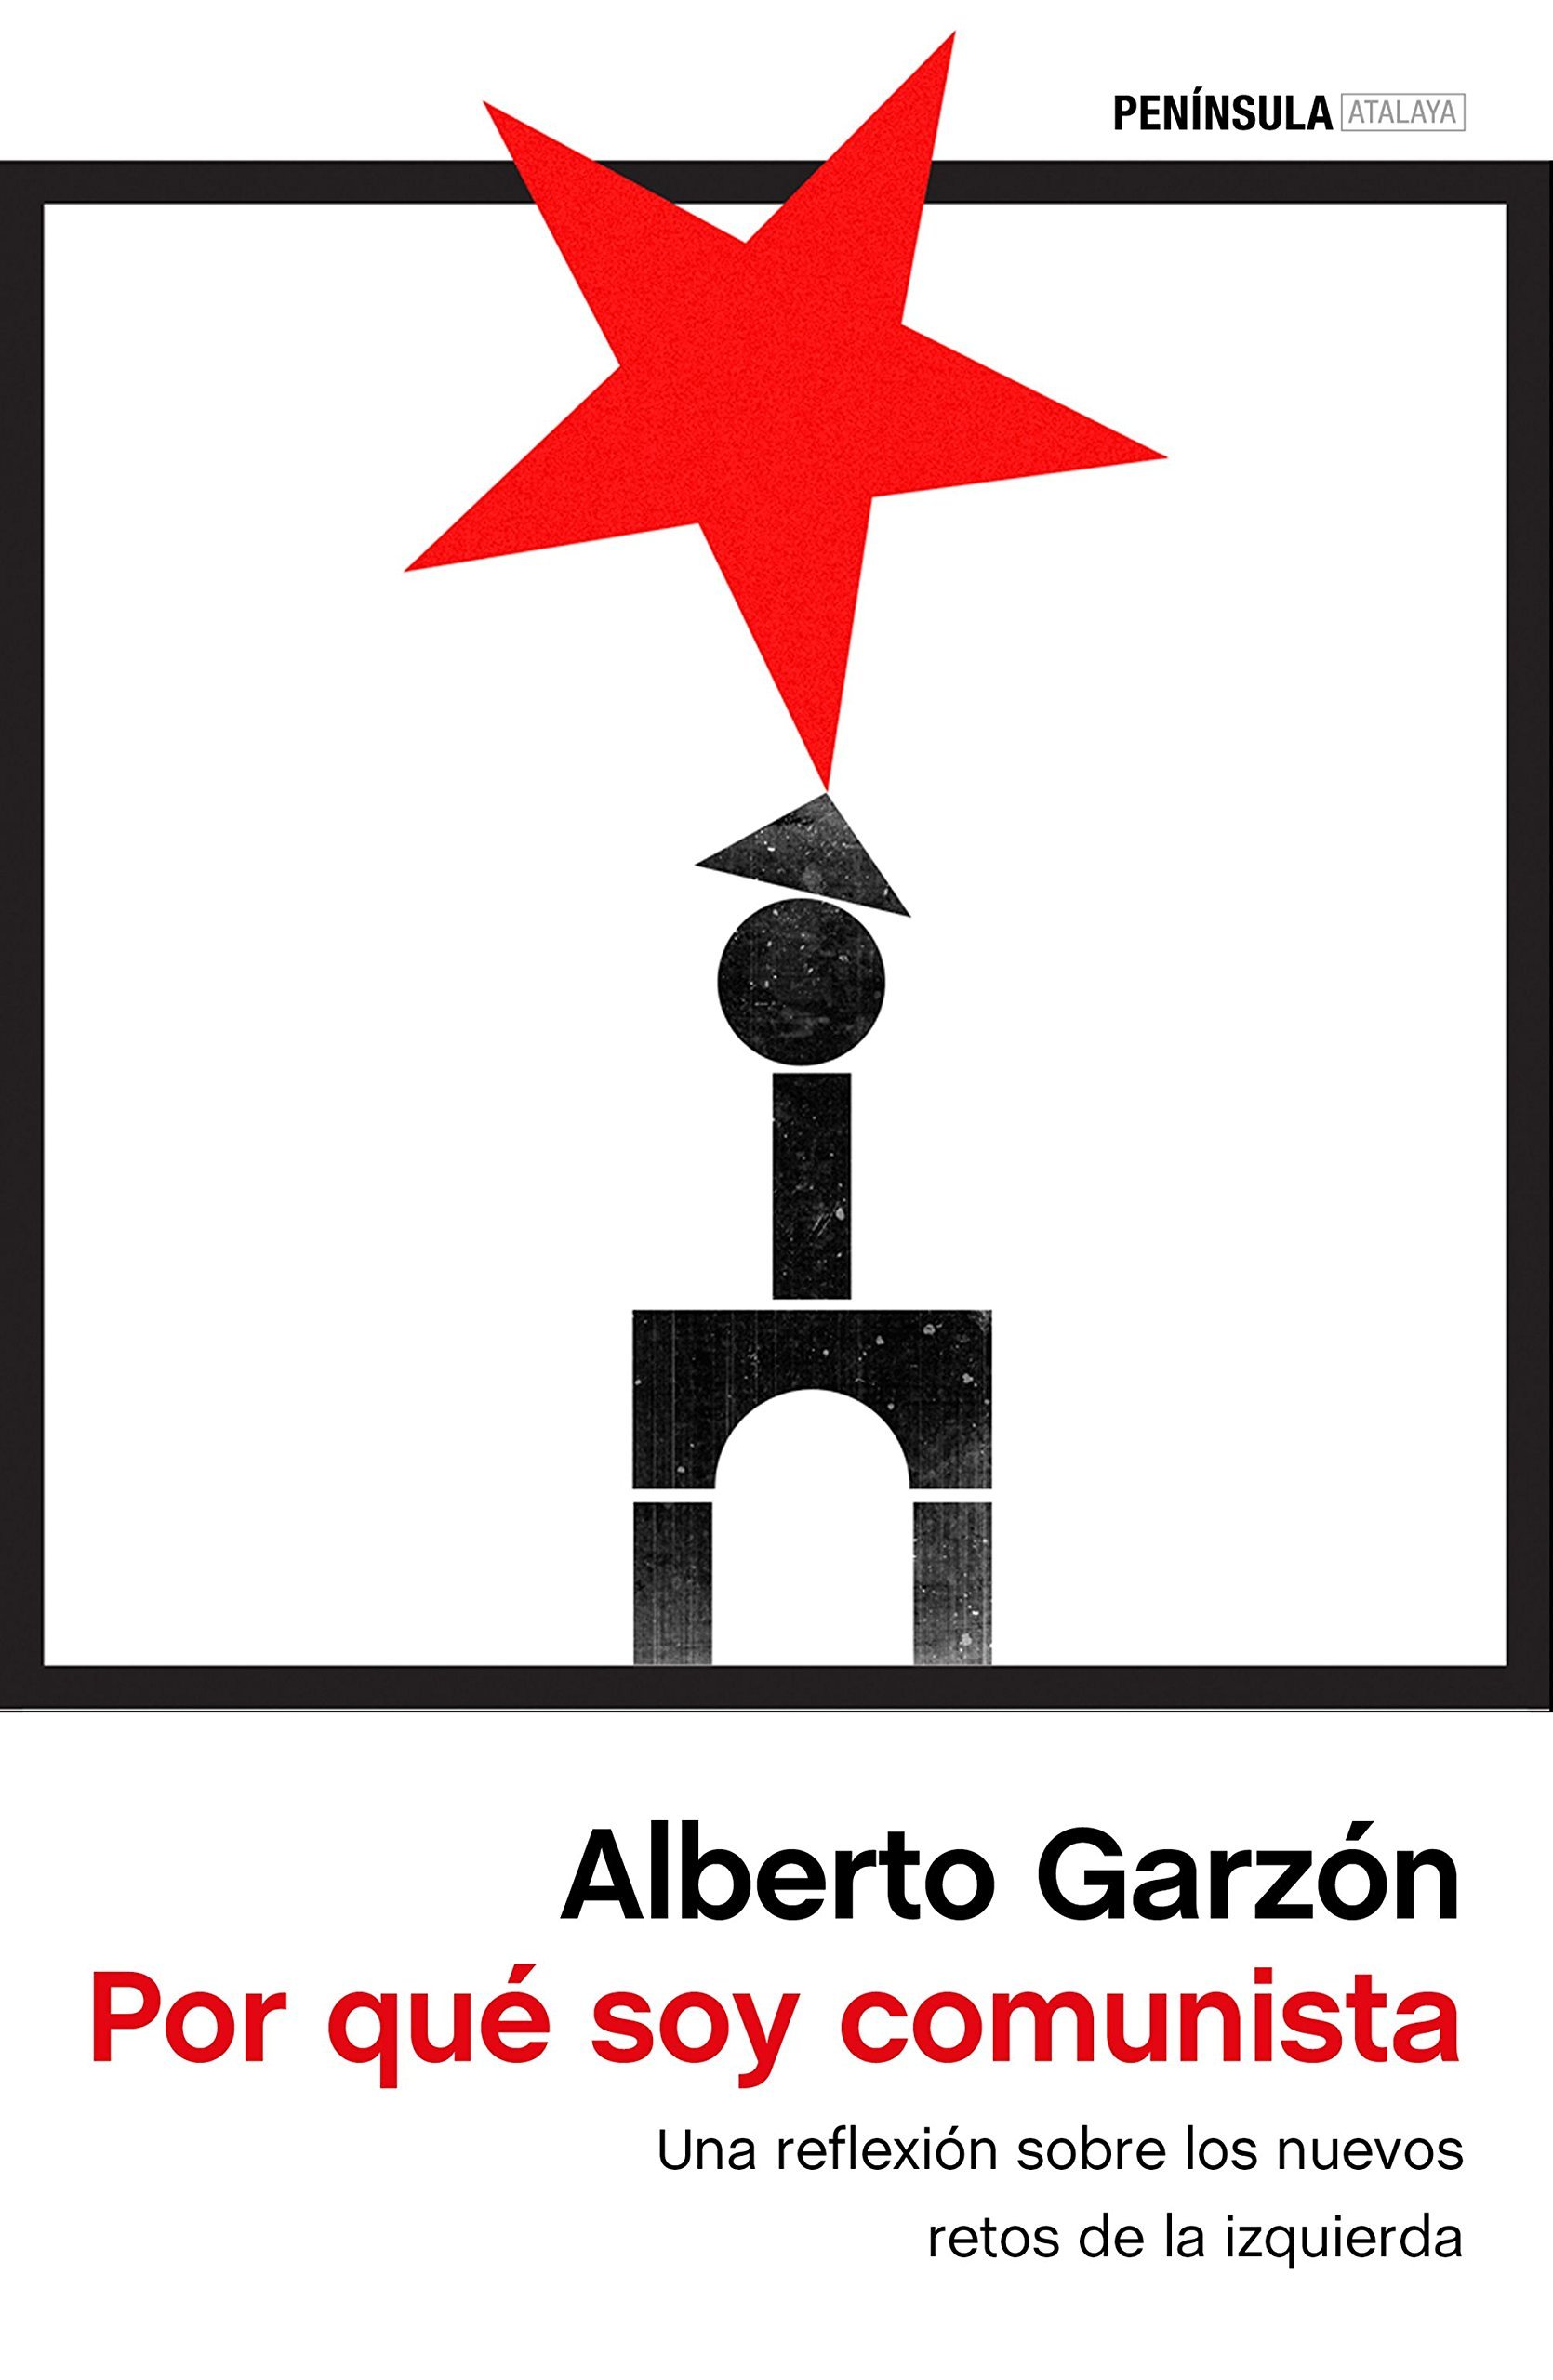 Alberto Garzón: Por qué soy comunista (Spanish language, 2017, Peninsula, Ediciones S.A.)